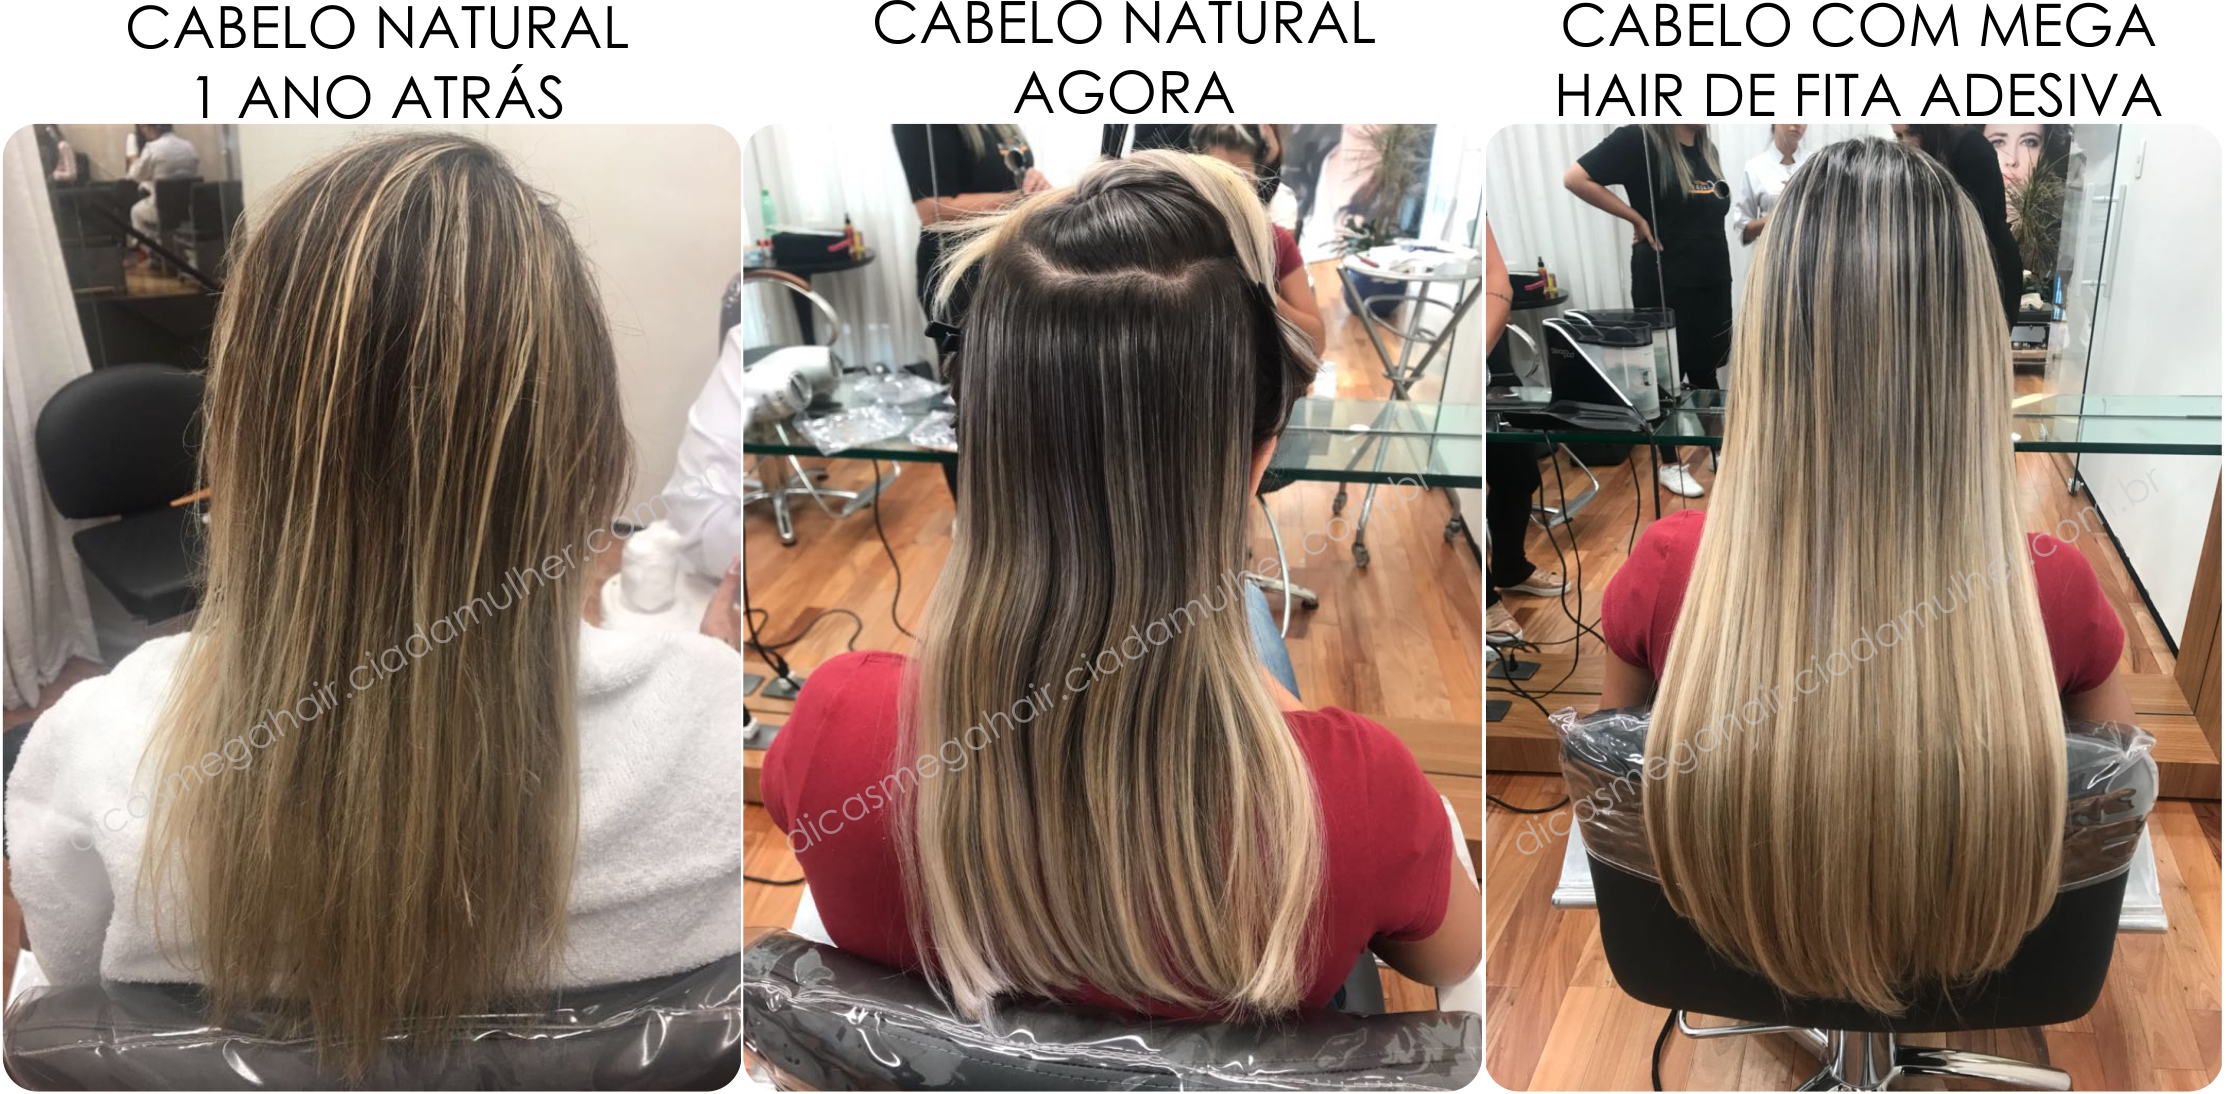 Antes e depois mega hair